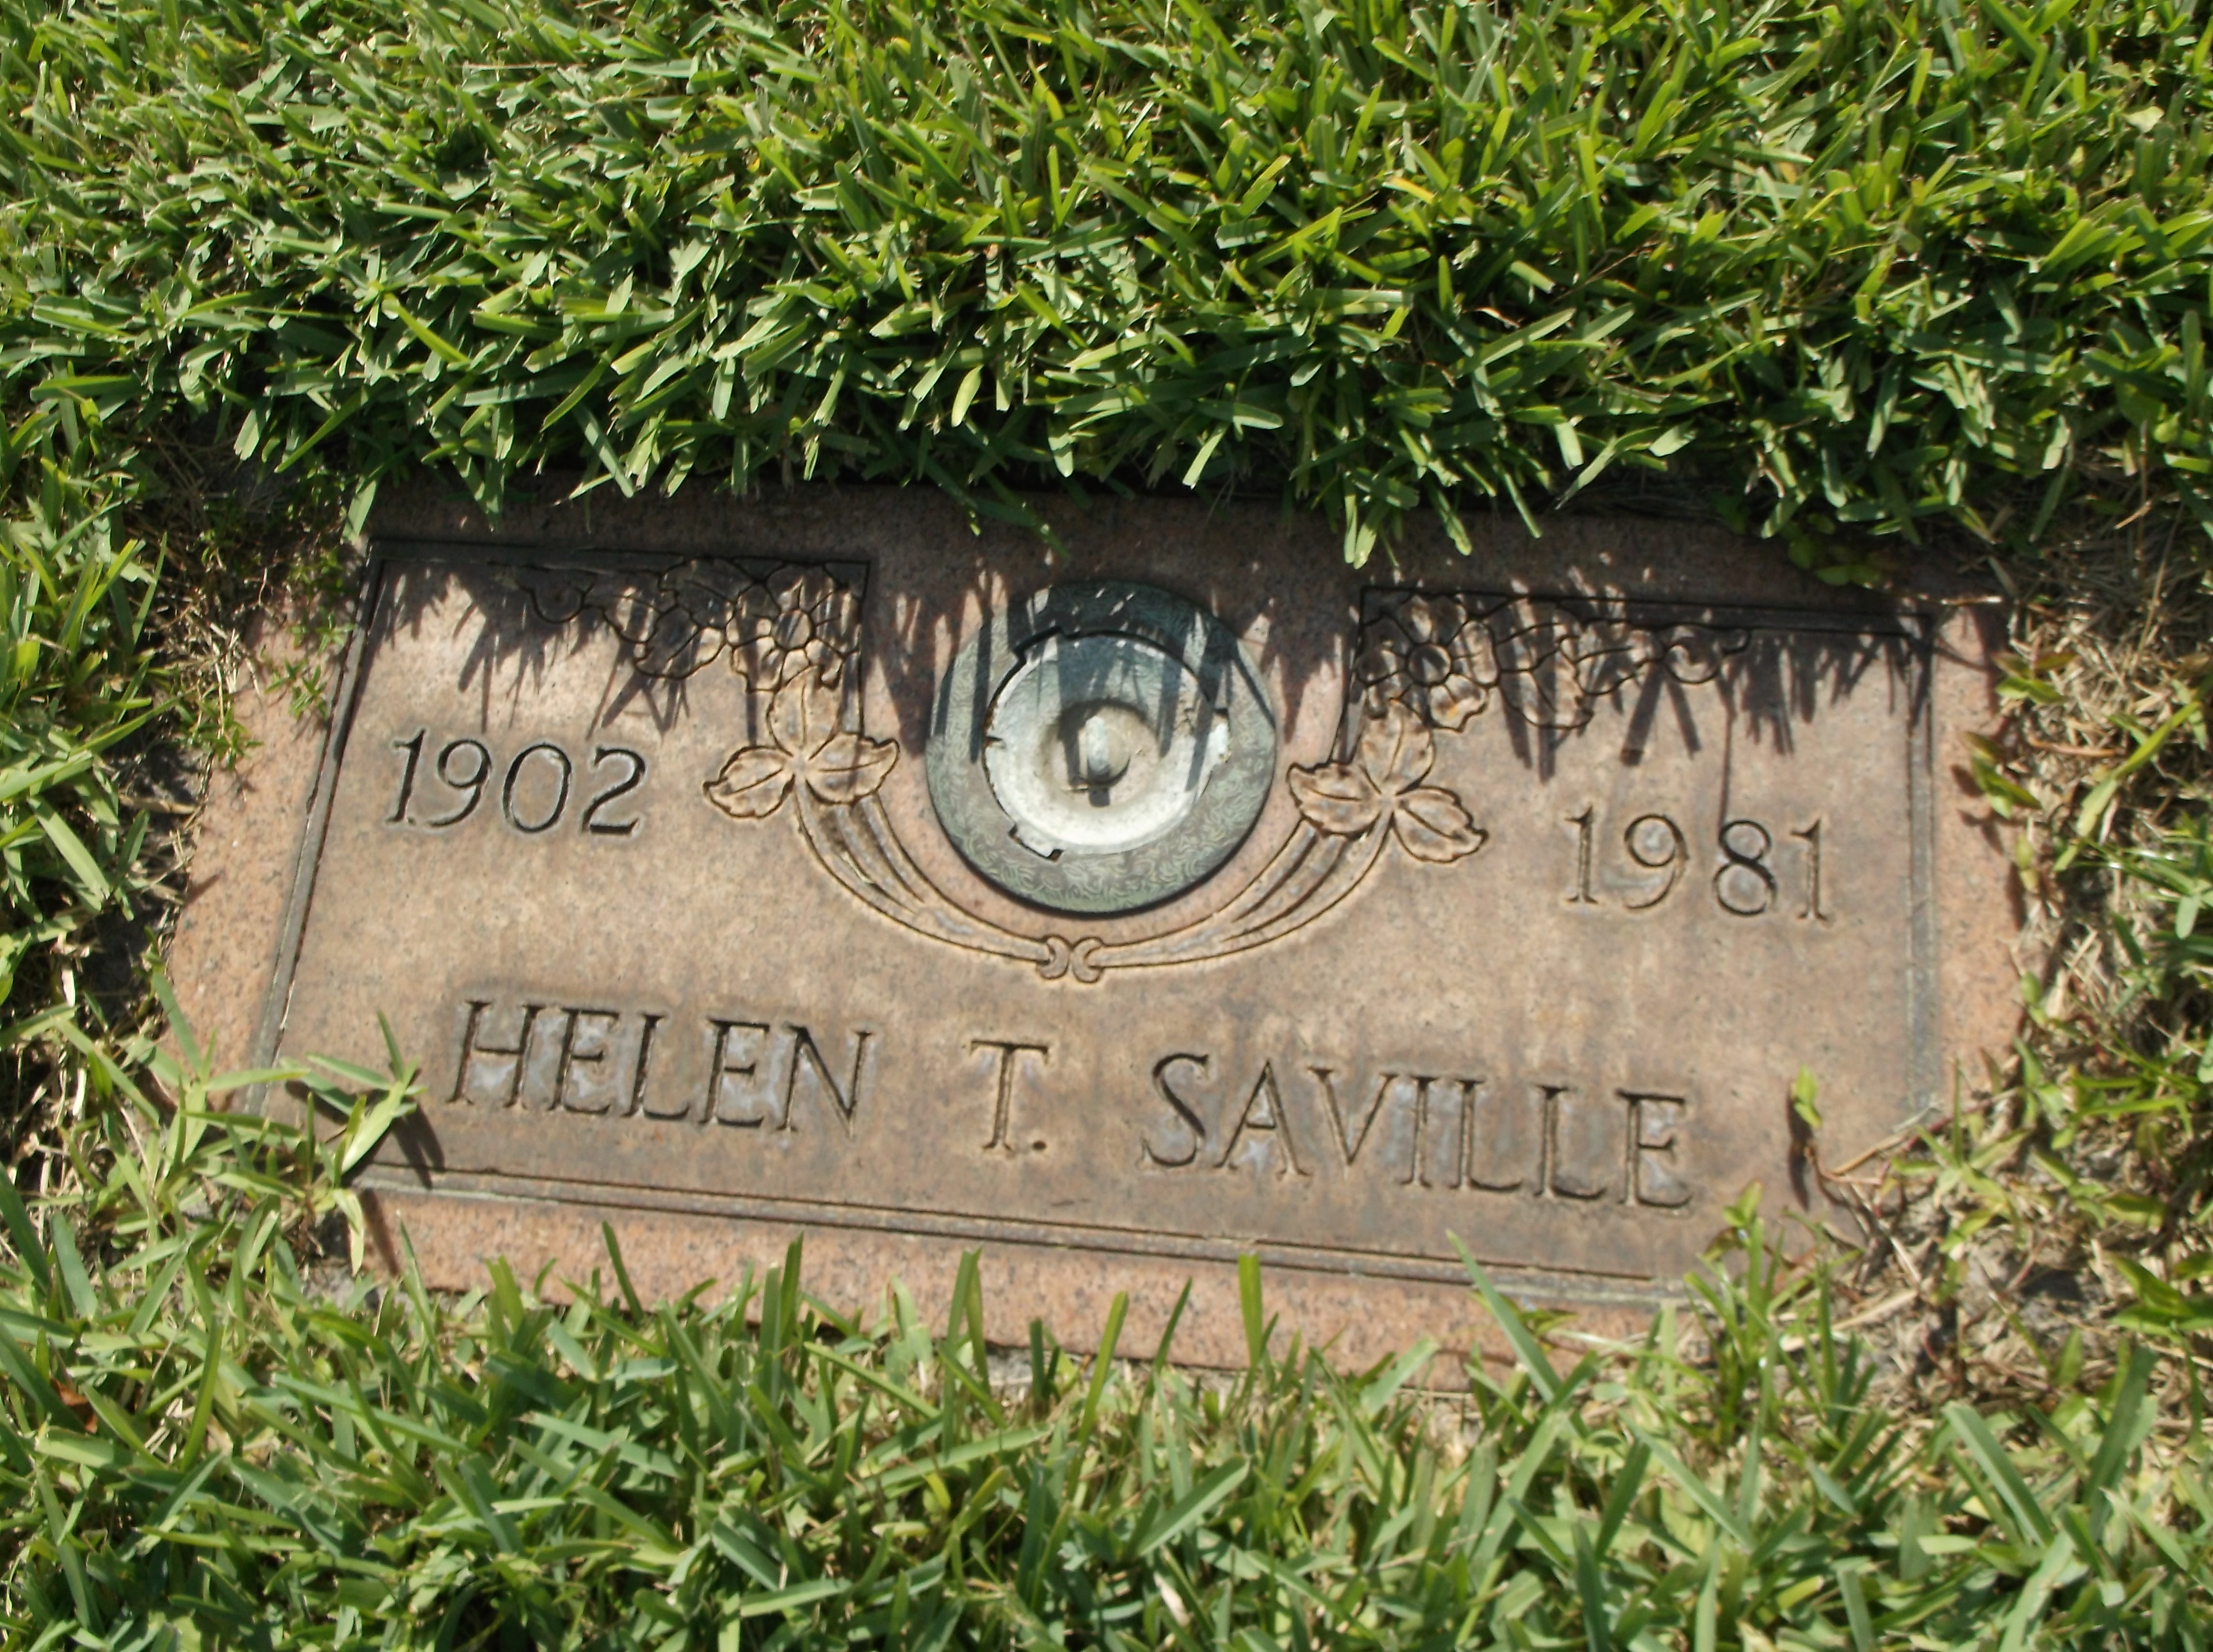 Helen T Saville